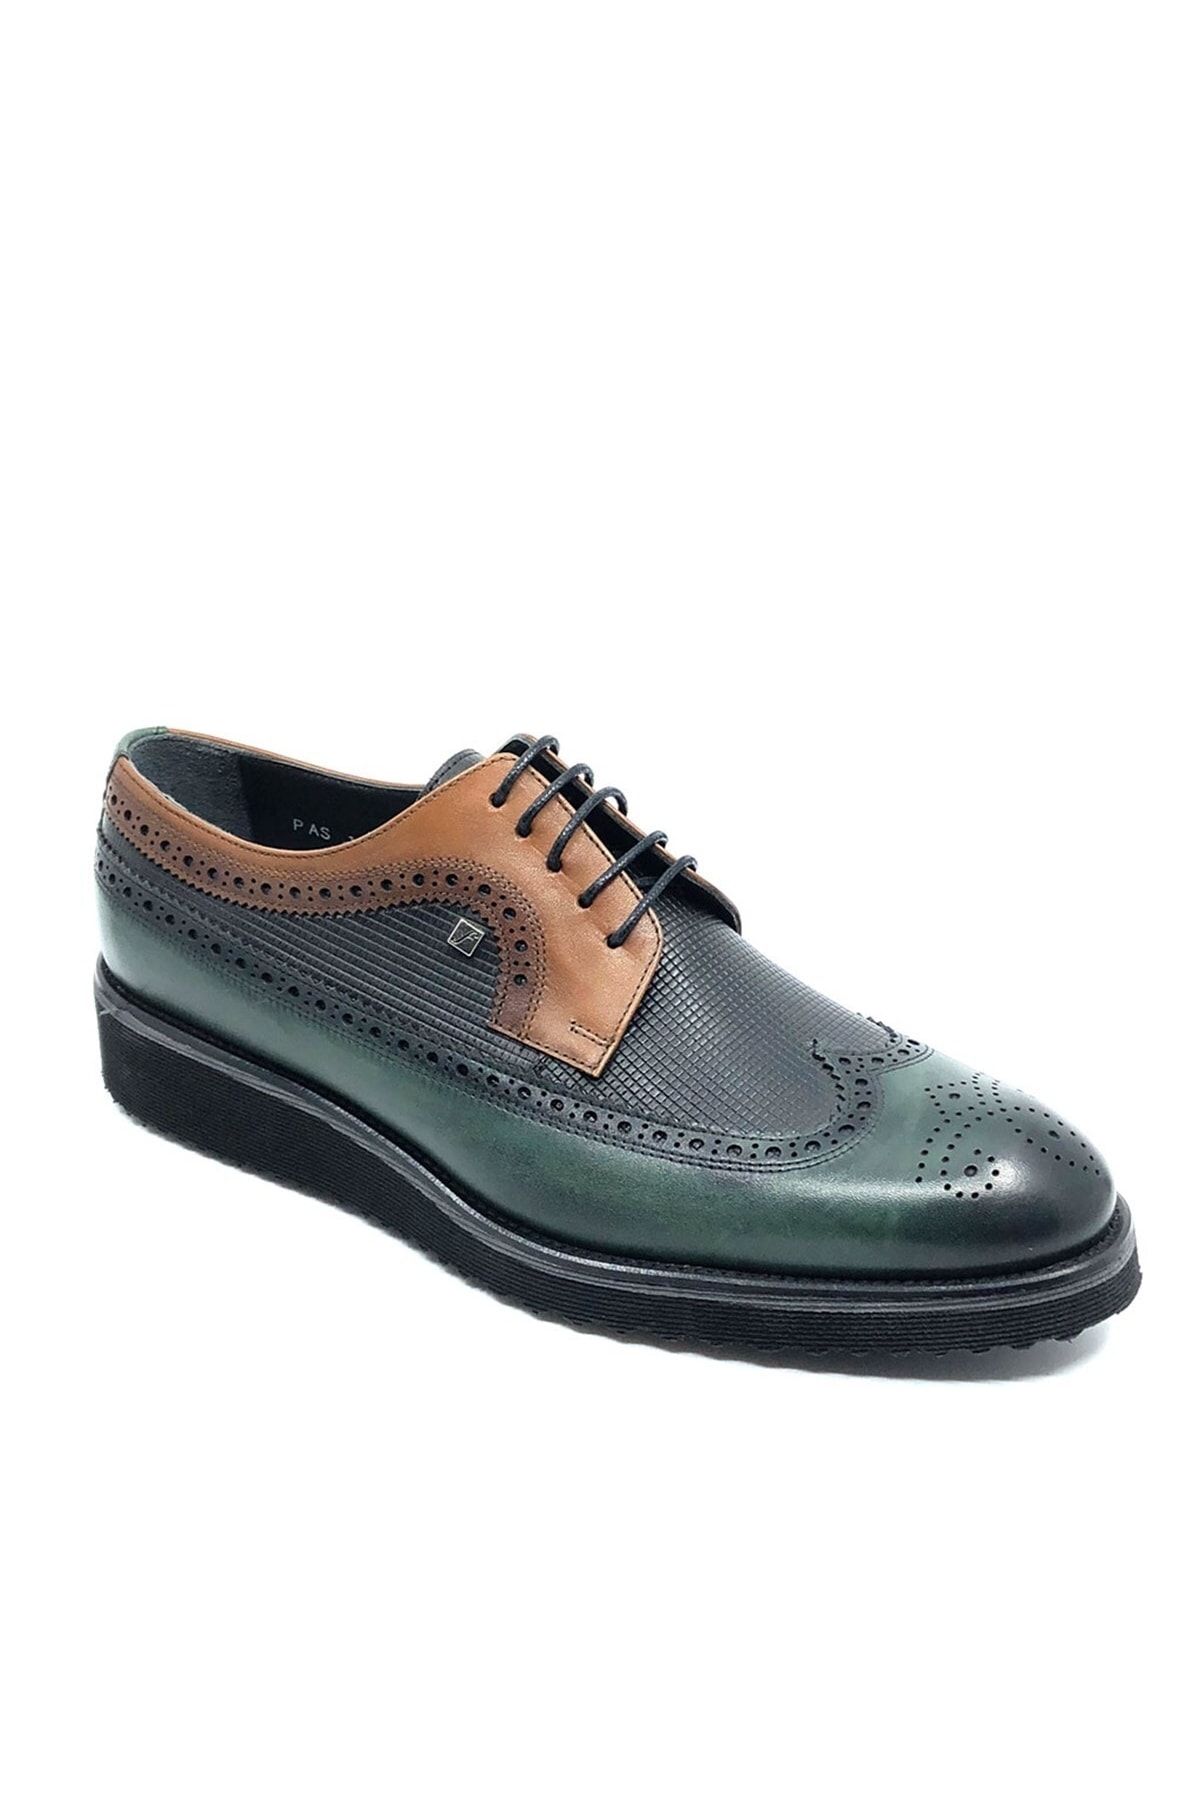 Fosco 1106 Hakiki Deri Erkek Günlük Ayakkabı Yeşil